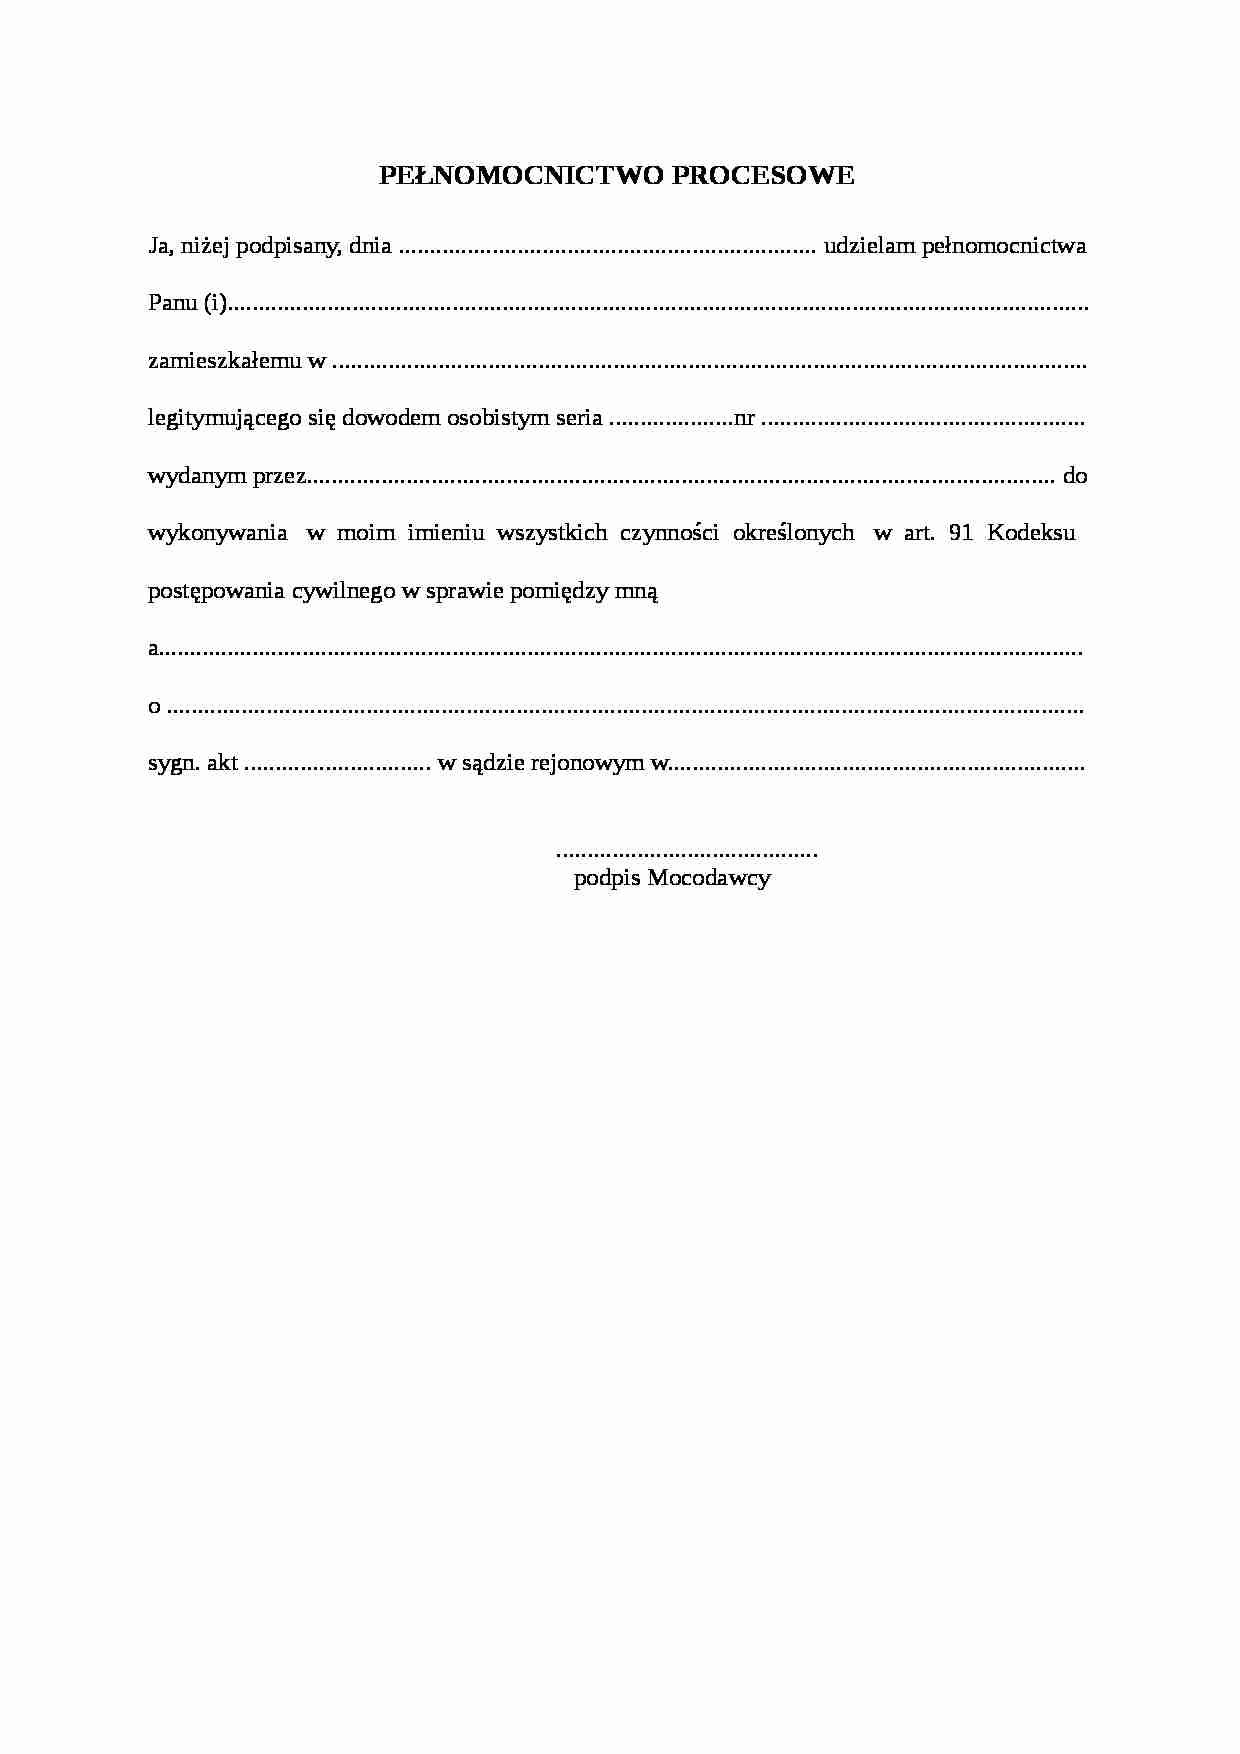 Wzór-Pełnomocnictwo procesowe - strona 1